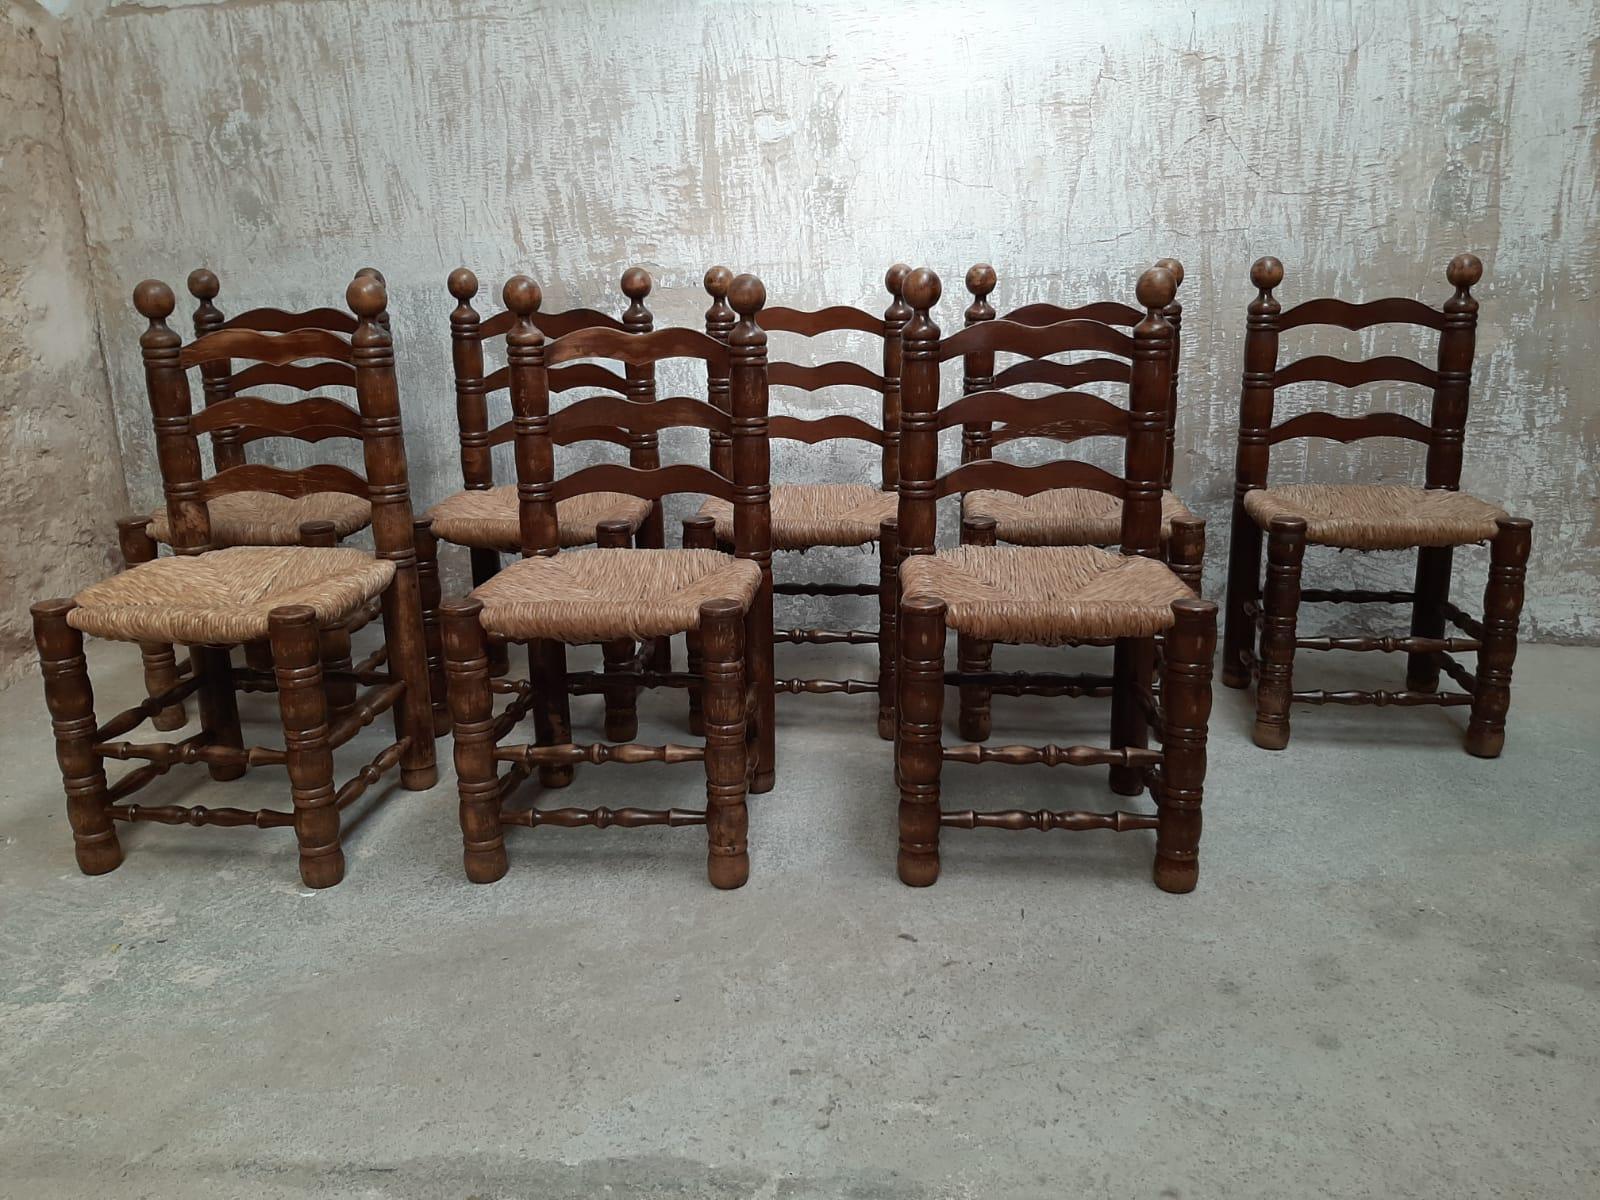 Lot de 8 chaises à dossier échelonné dans le style de Charles Dudouyt, circa 1940s.
Magnifique cadre en chêne naturel et original avec des sièges en jonc tressé, construction solide et robuste.
Le style du dessin rappelle celui du concepteur et/ou